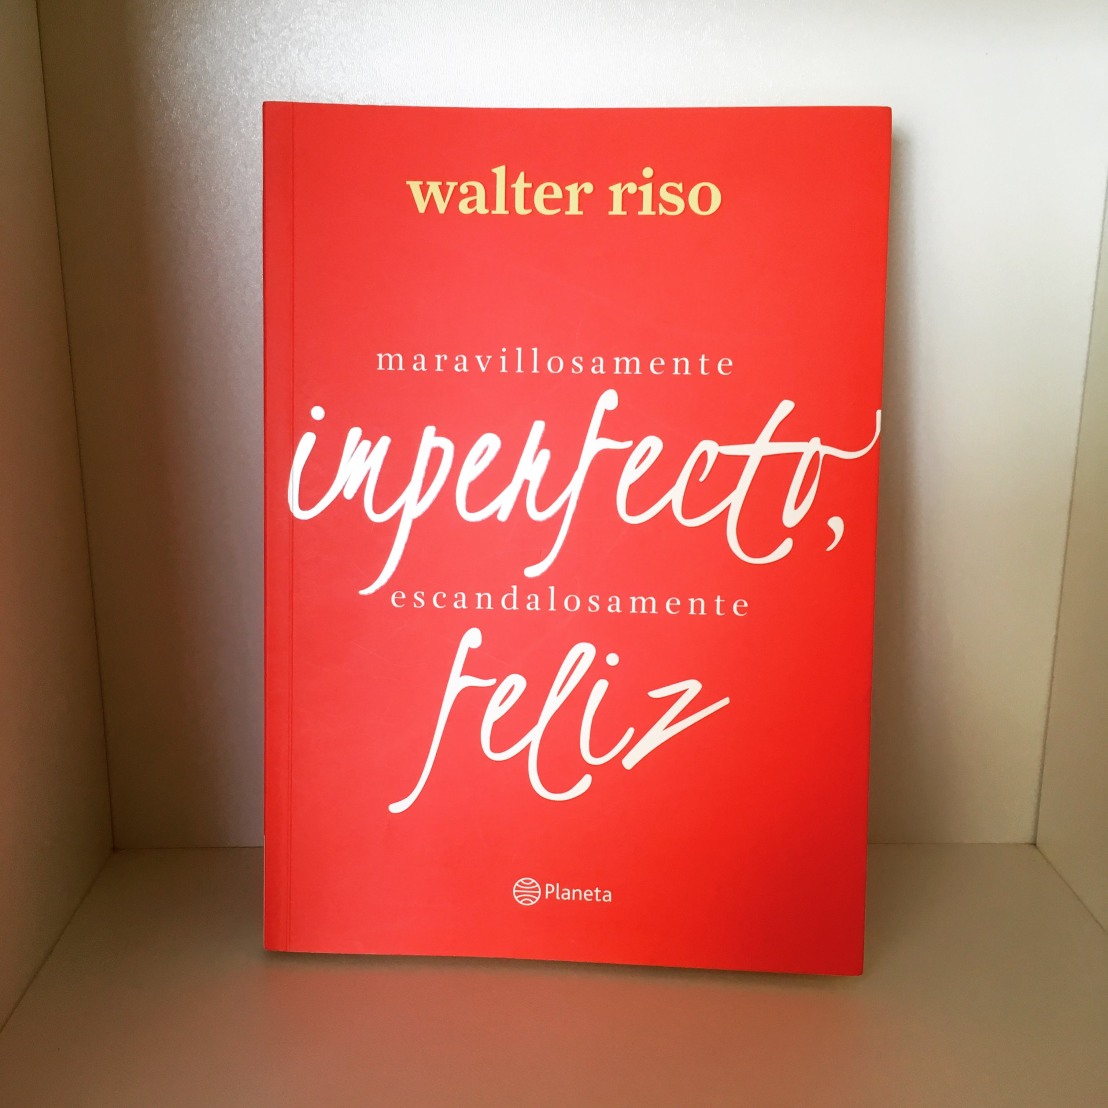 Portada del libro Maravillosamente imperfecto, escandalosamente feliz. (Foto: Sandra Ramírez Checnes)